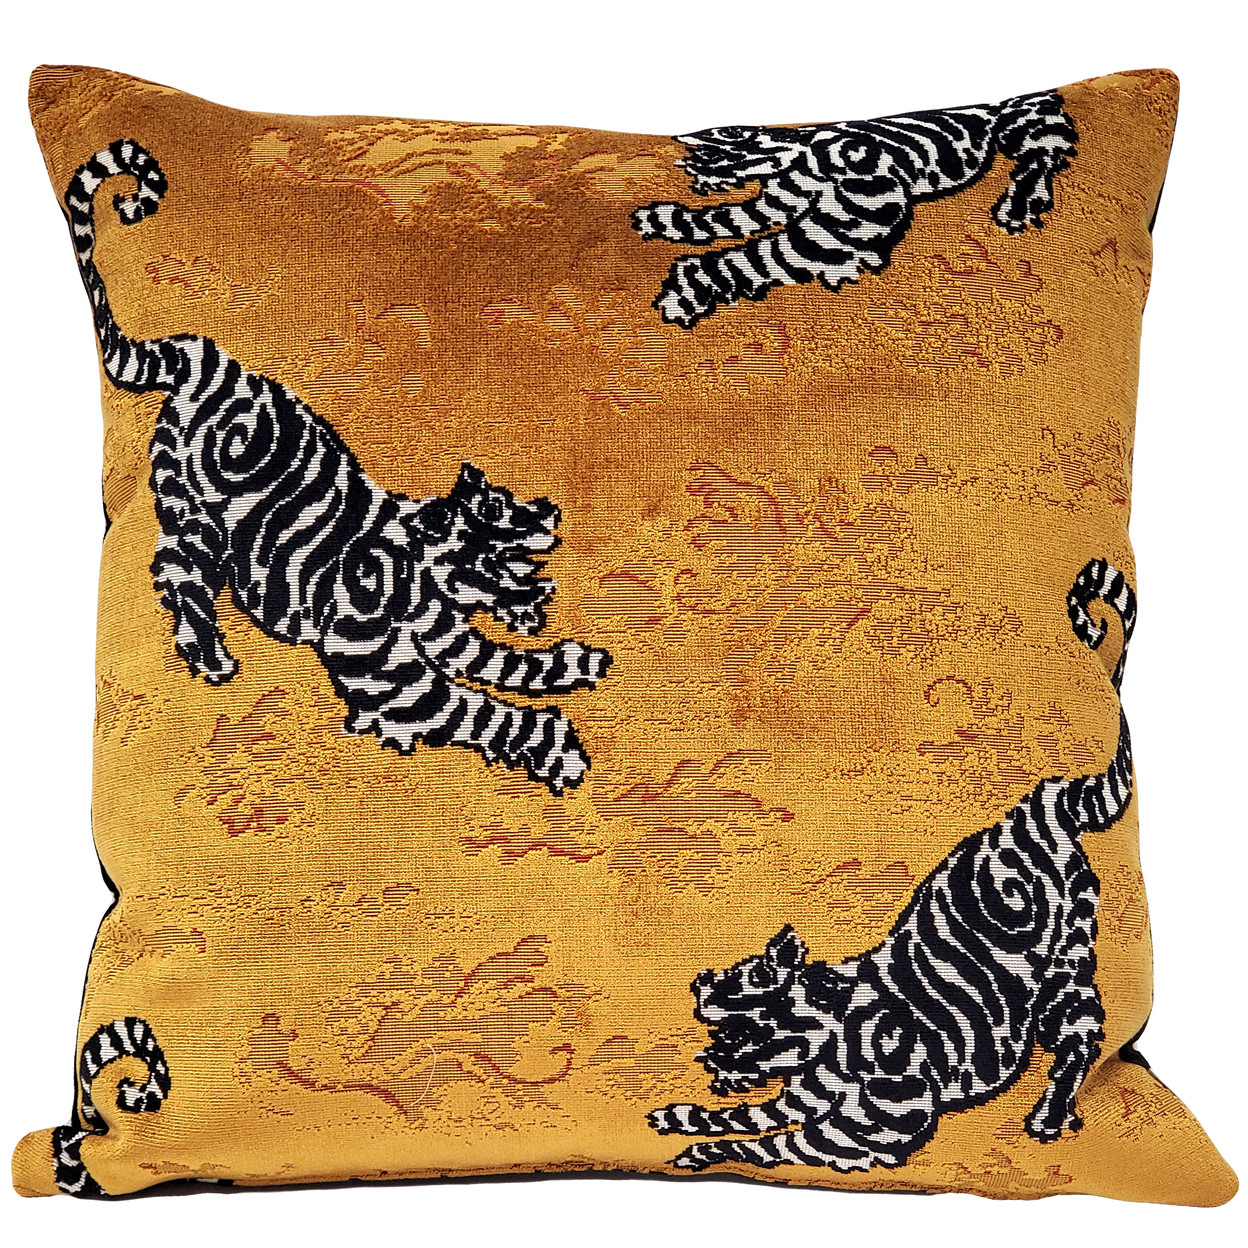 Bongol Velvet Tiger Throw Pillow 26x26, With Polyfill Insert